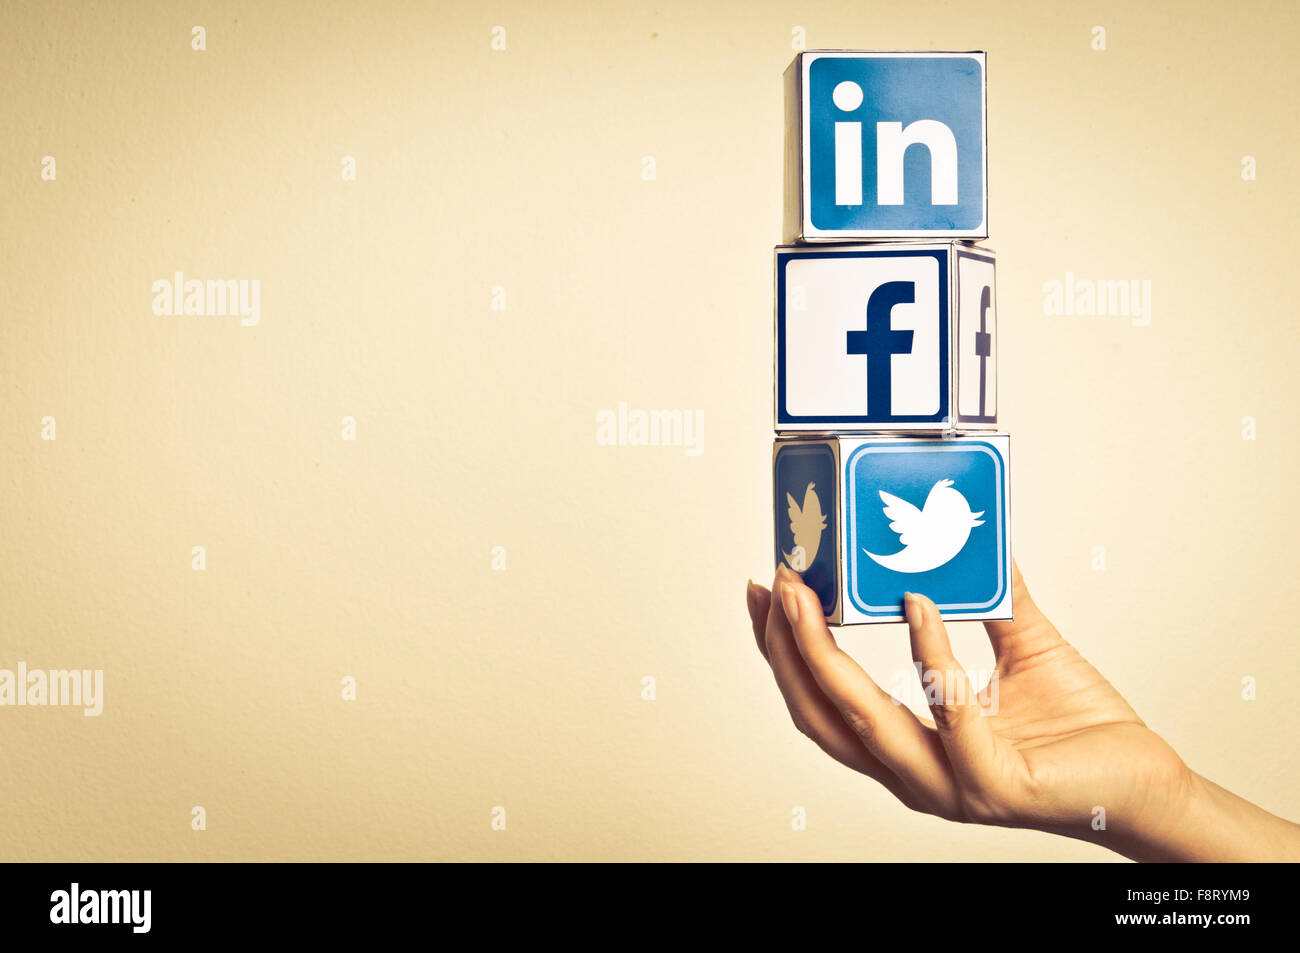 social media concept Stock Photo